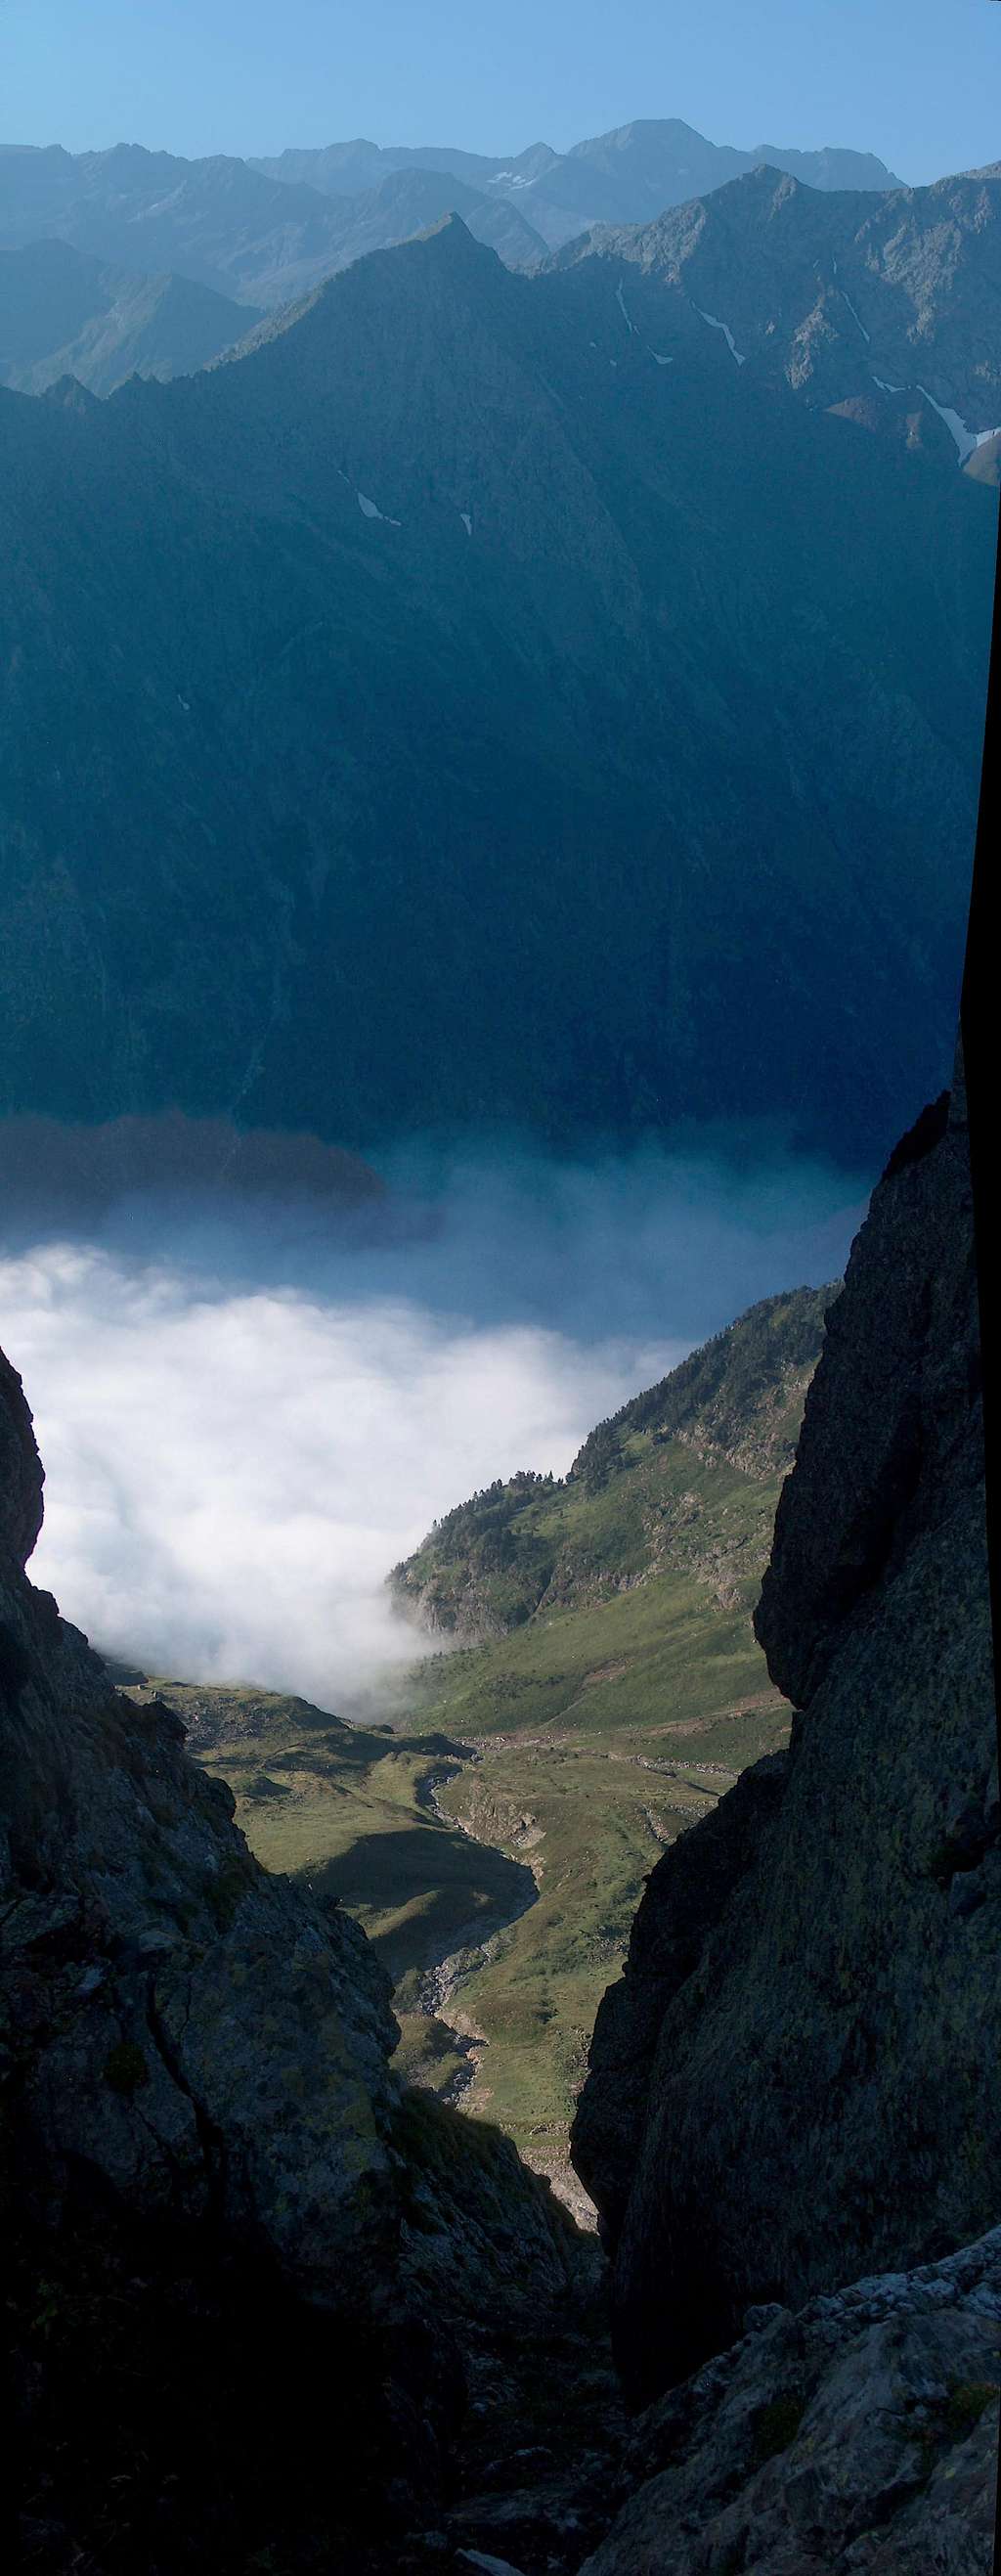 The cloudy Vallon de La Pez while ascending Pic d'Estos